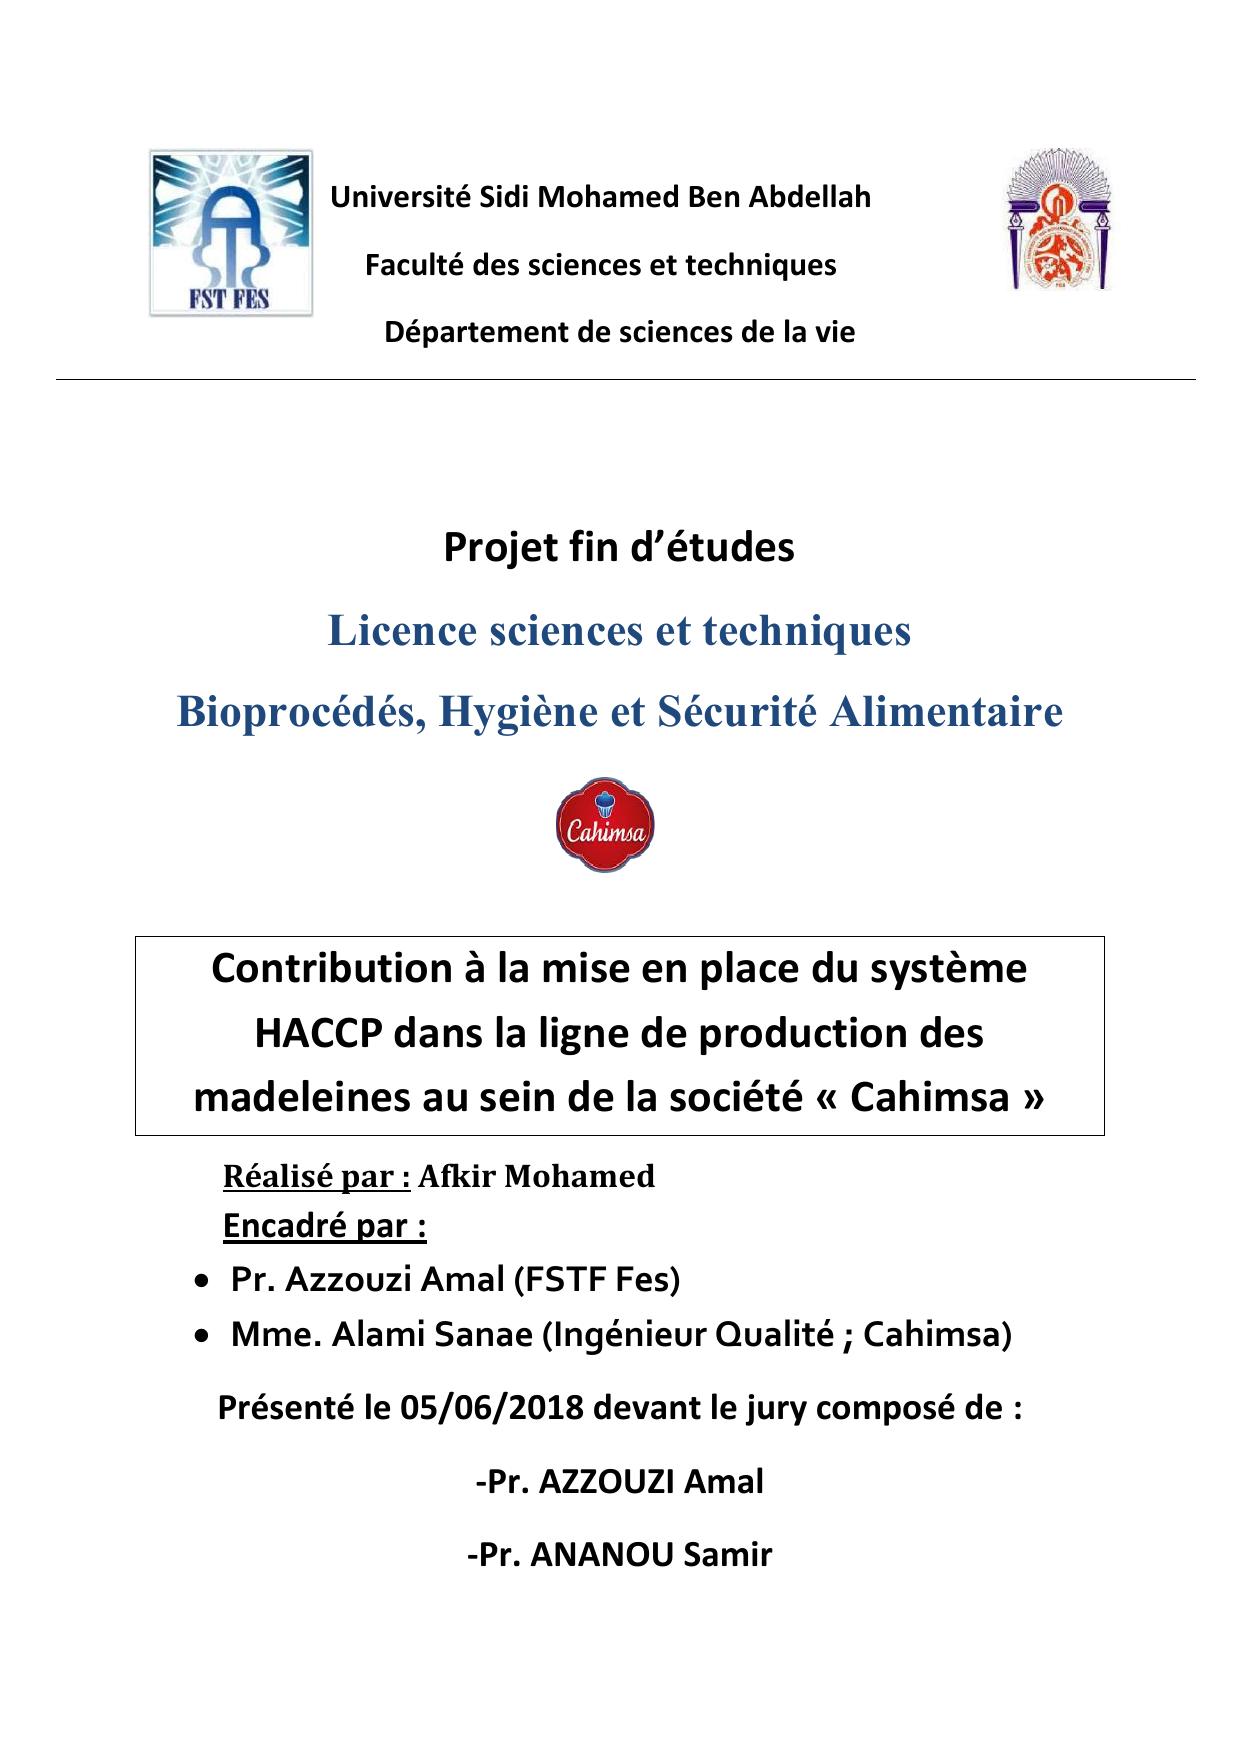 Contribution à la mise en place du système HACCP dans la ligne de production des madeleines au sein de la société « Cahimsa »